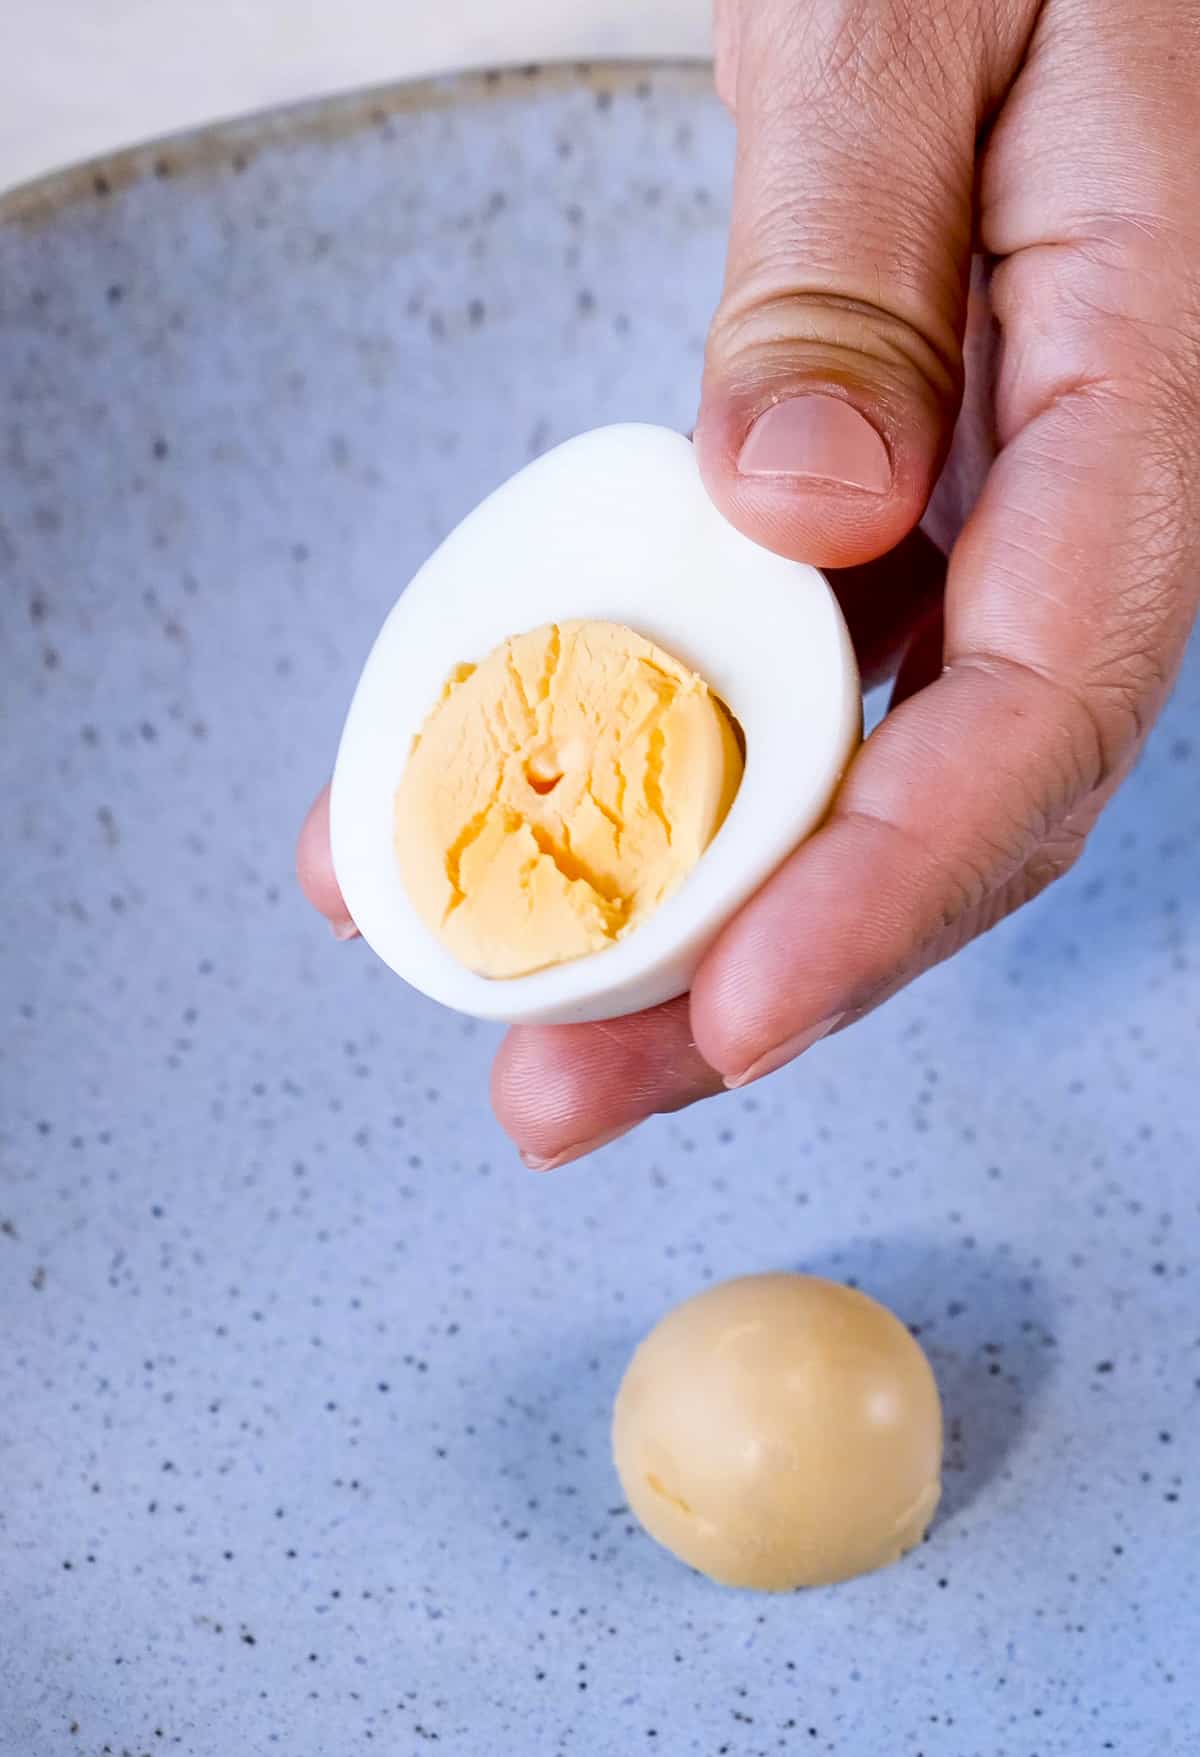 用手轻轻挤压半个煮熟的鸡蛋，使蛋黄变松。